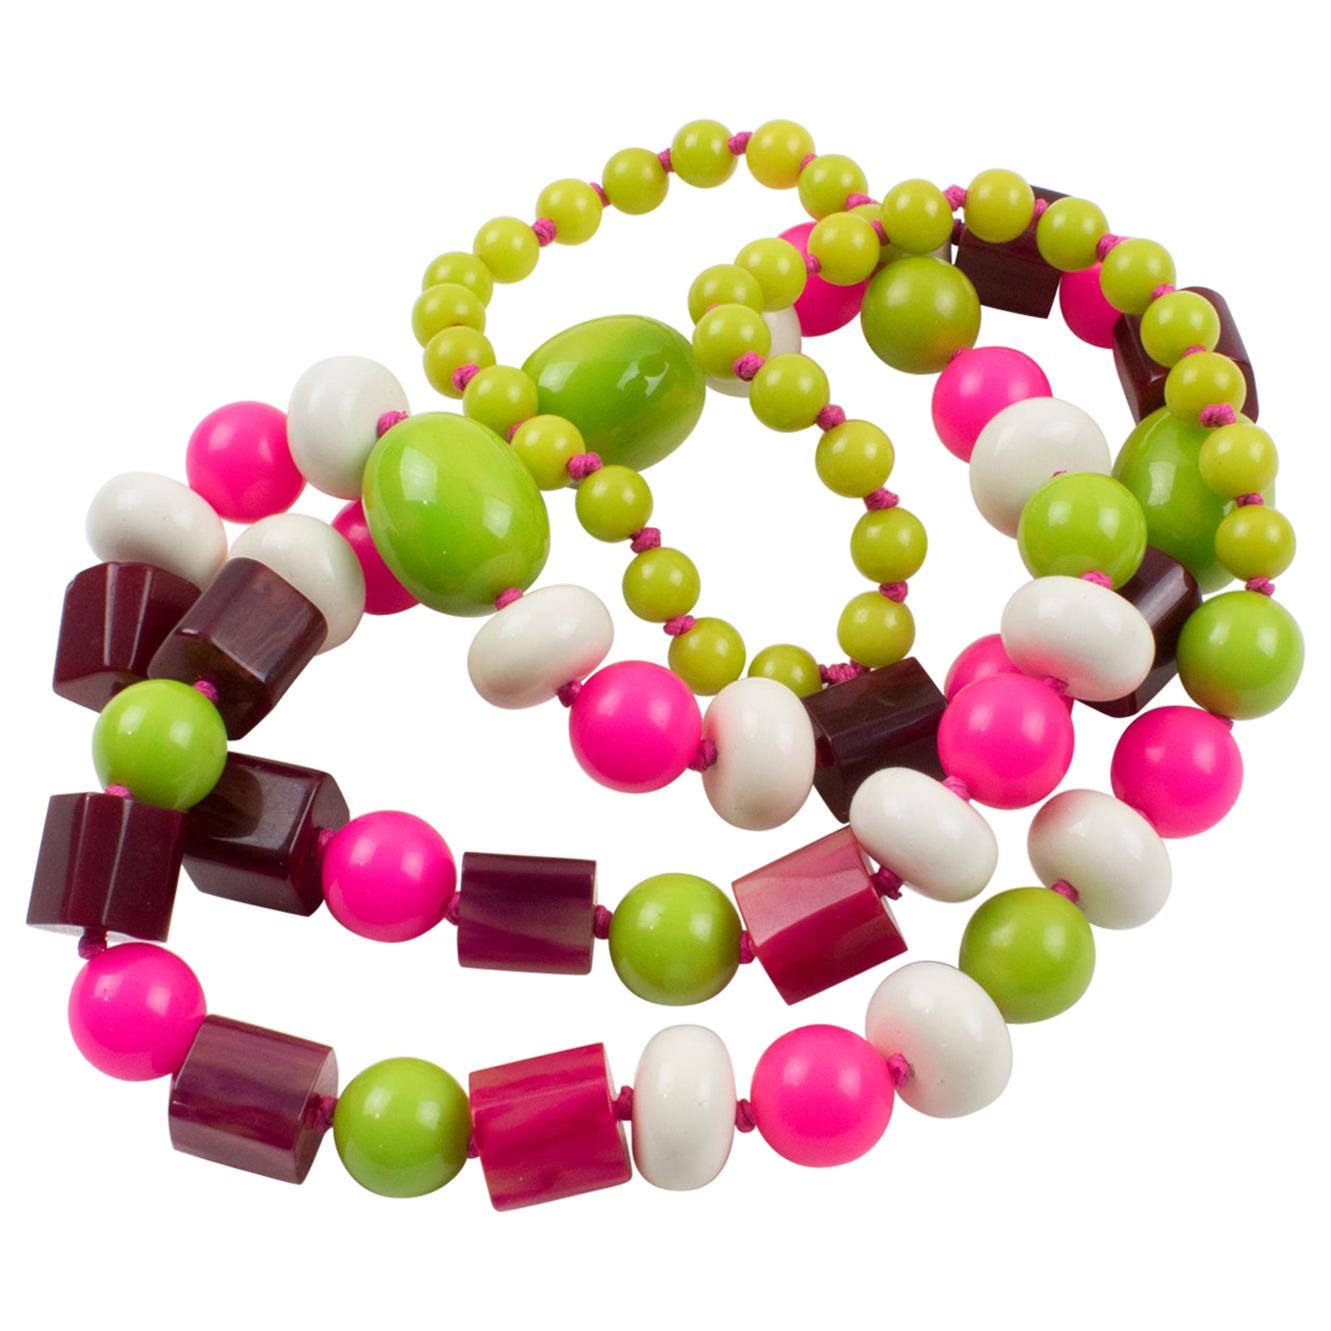 Lange Halskette aus Bakelit und Lucite in Weiß, Heißrosa, Apfelgrün mit Perlen